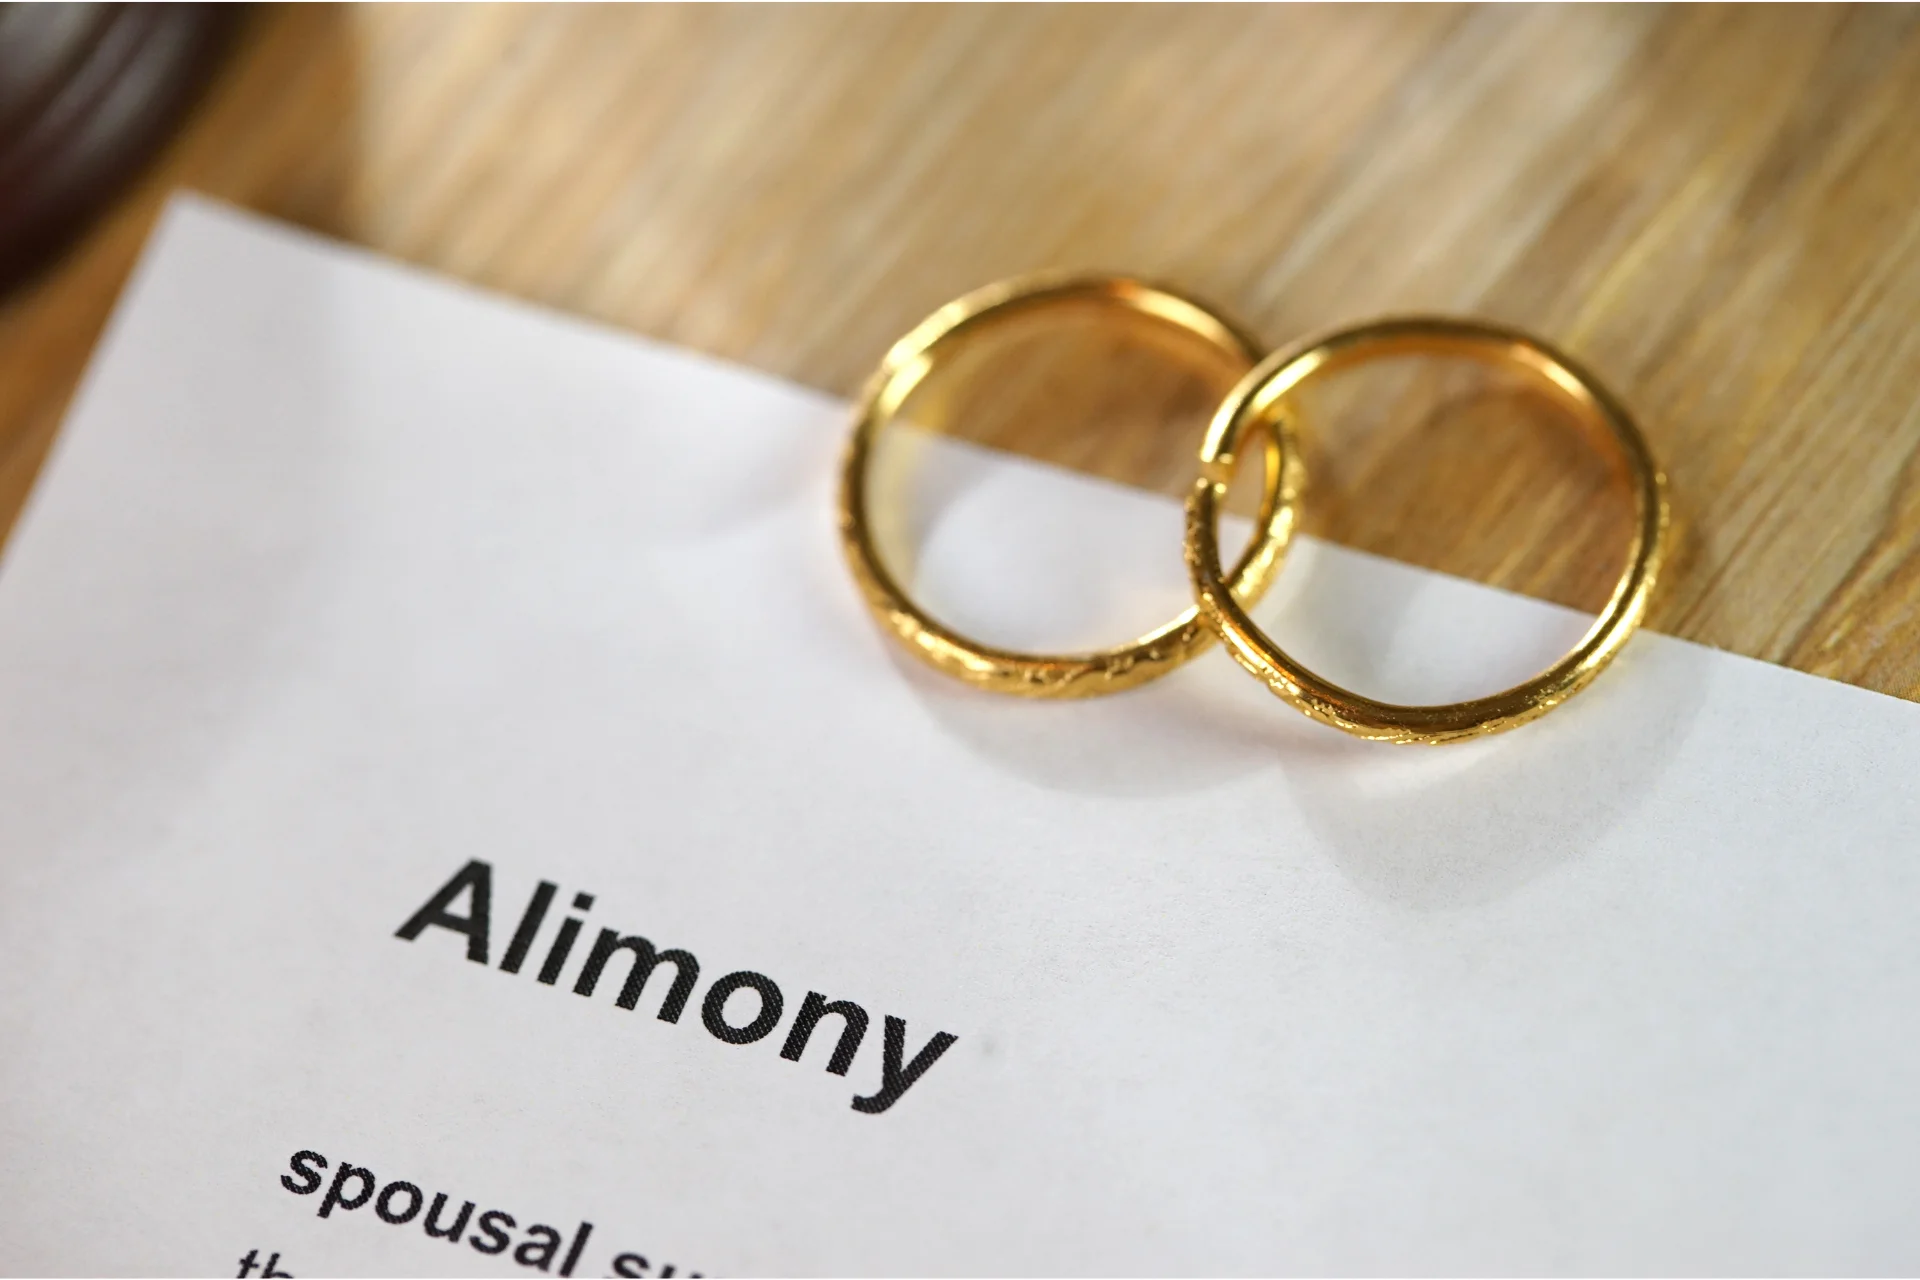 Alimony documents in Florida